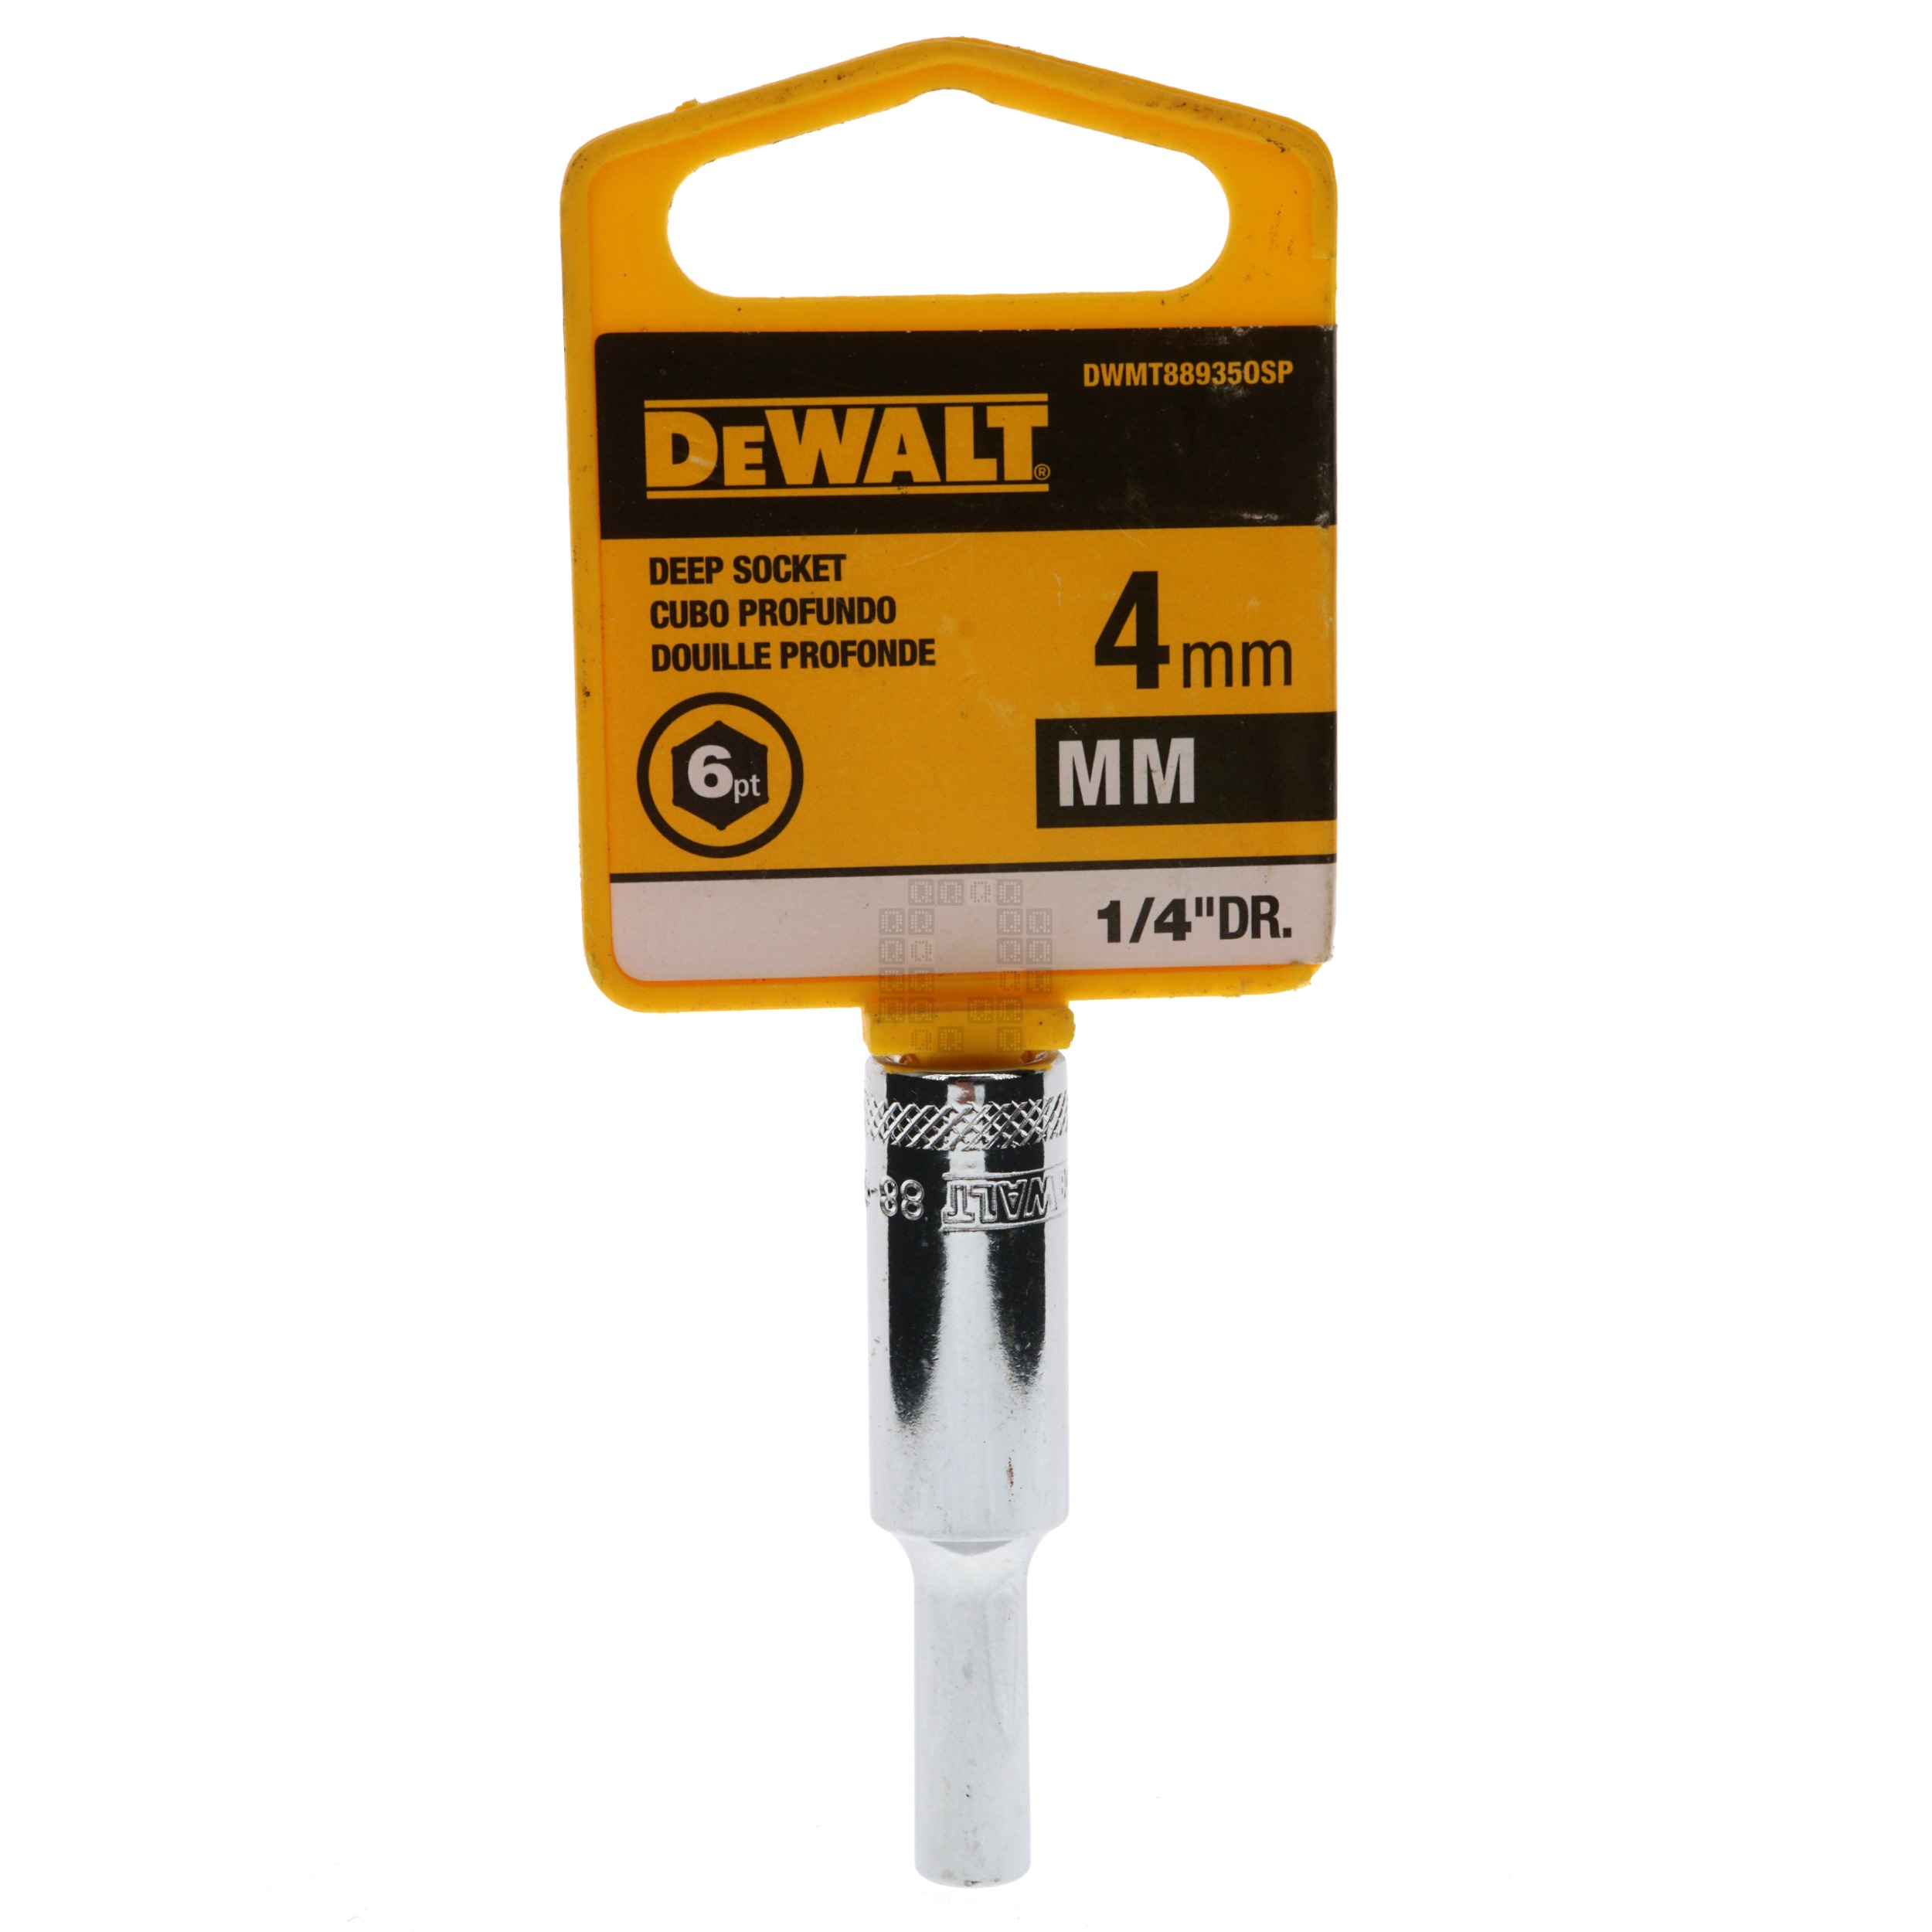 DeWALT DWMT88935OSP Metric Deep Chrome Socket, 4mm 6-Point, 1/4" Drive, 88-935D